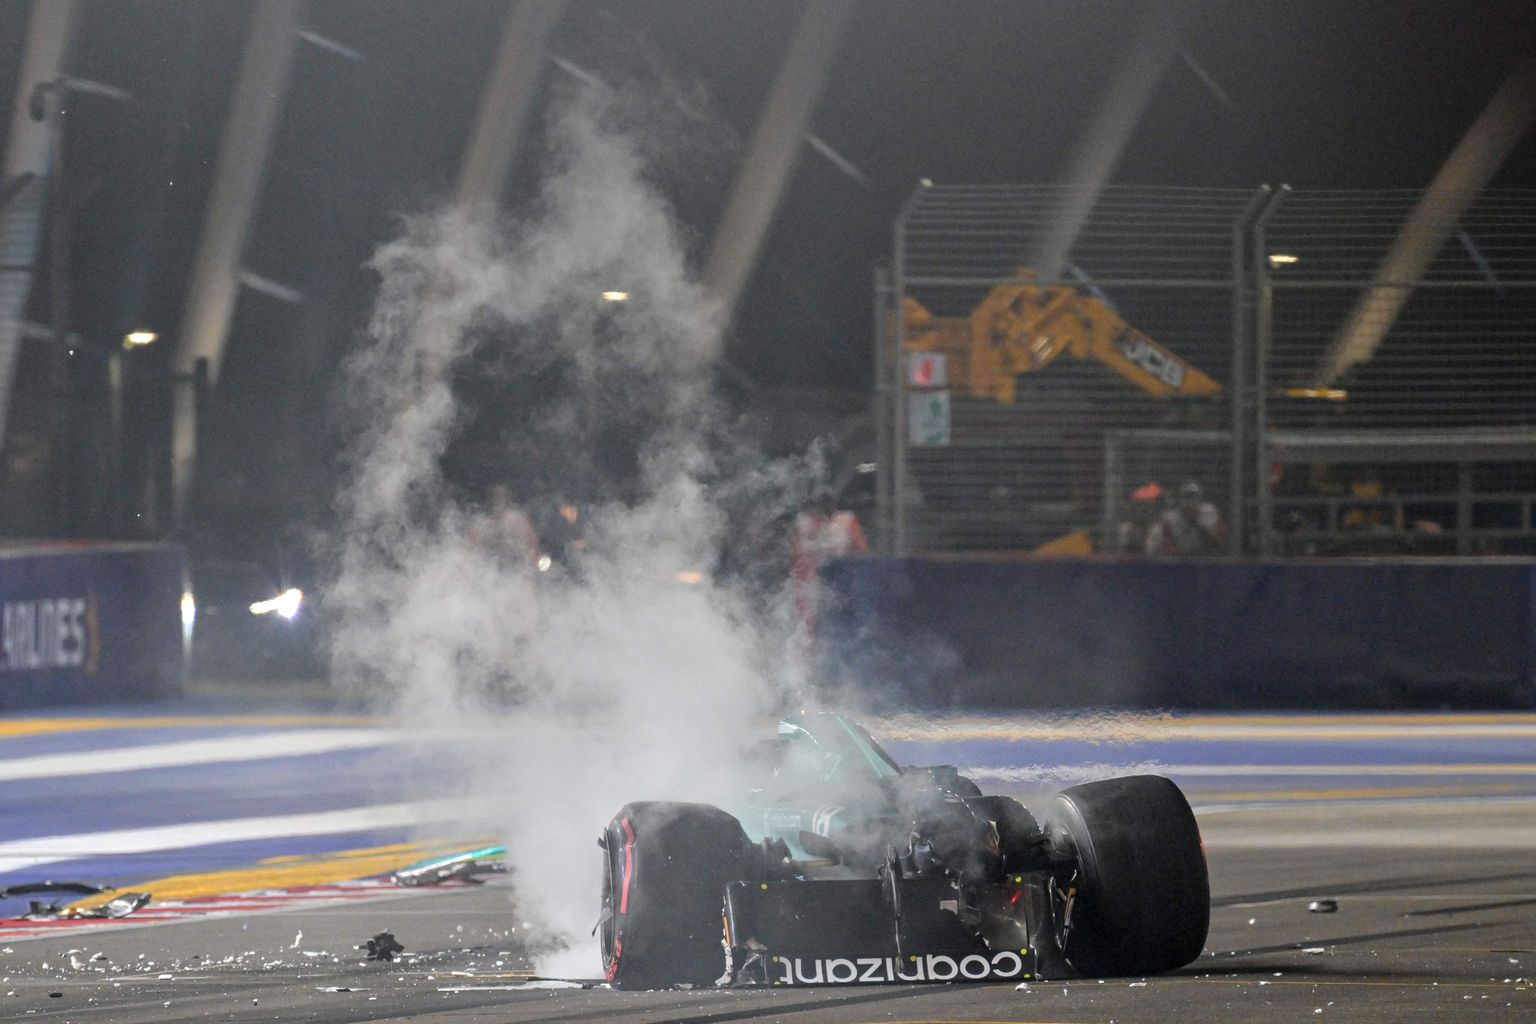 Aston Martini meeskonna piloot Lance Stroll kihutas eilses kvallifikatsioonis vastu seina.